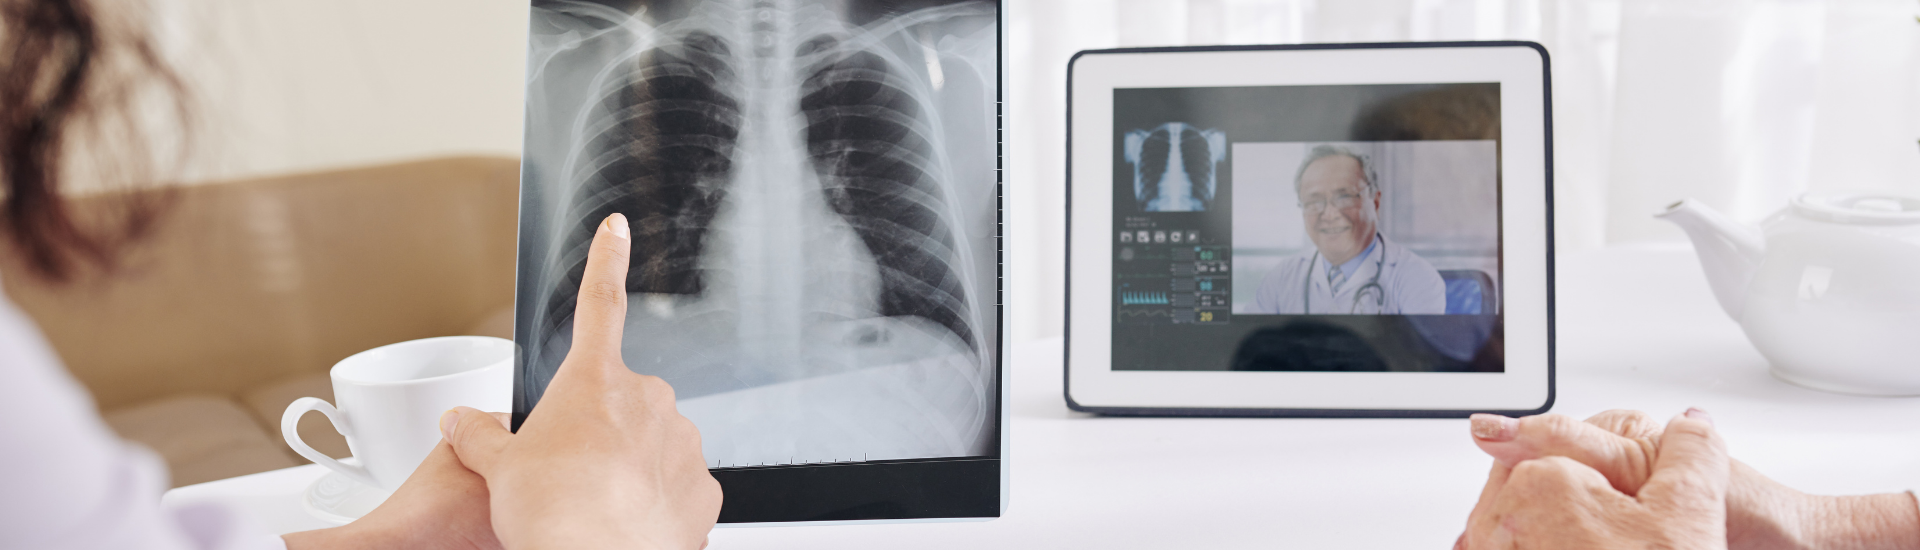 Servizio di Radiografie o RX a Domicilio Medical Group - Formato Desktop